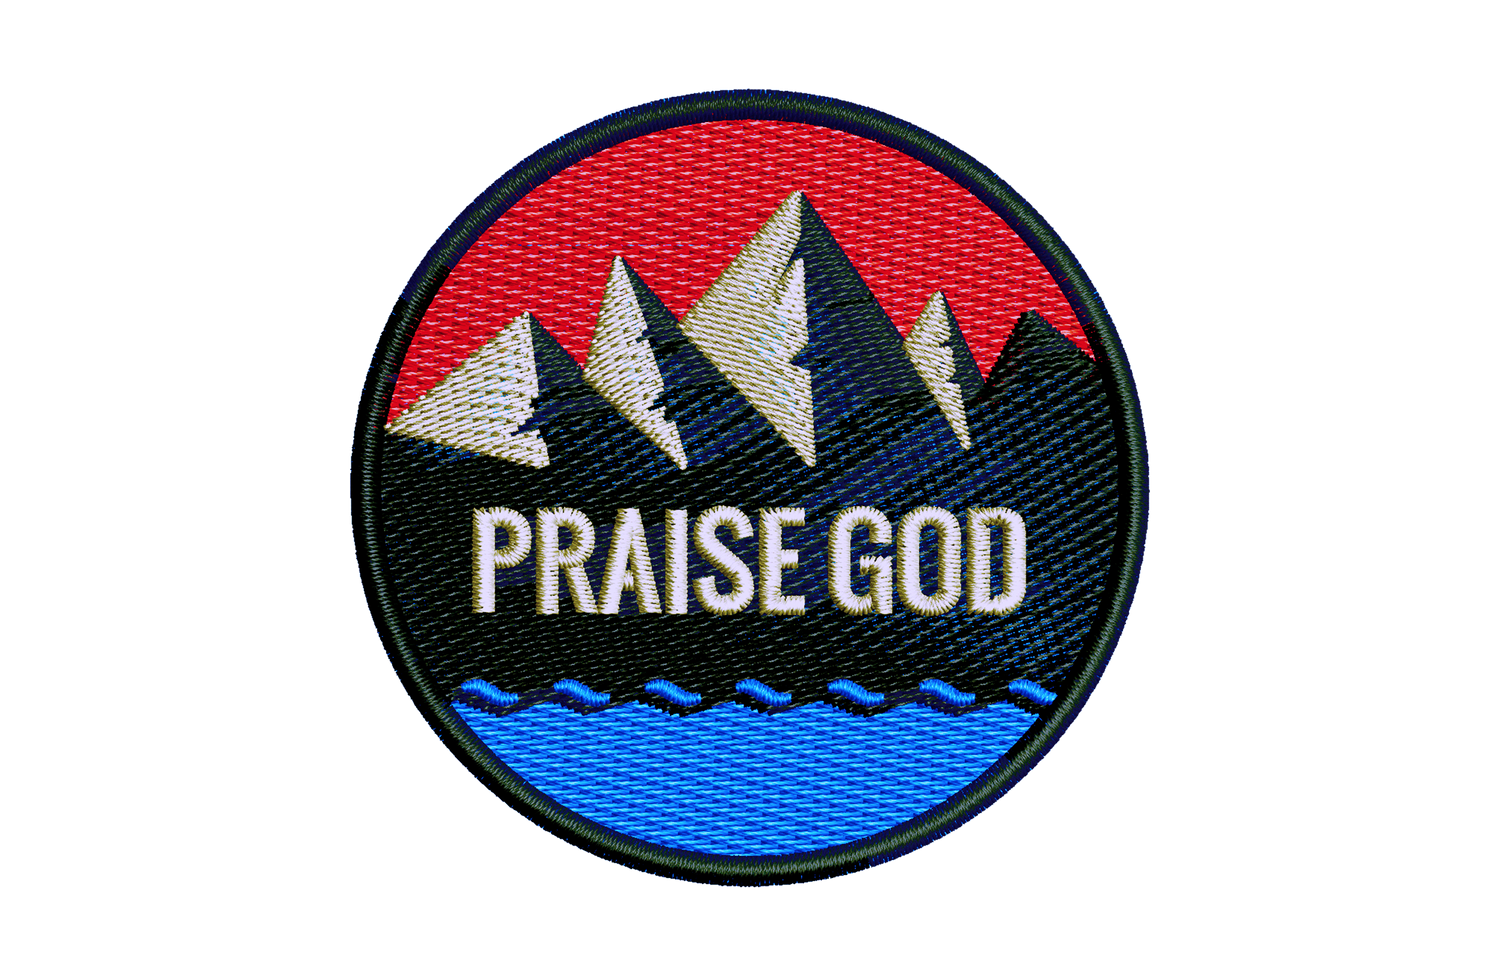 Praise God